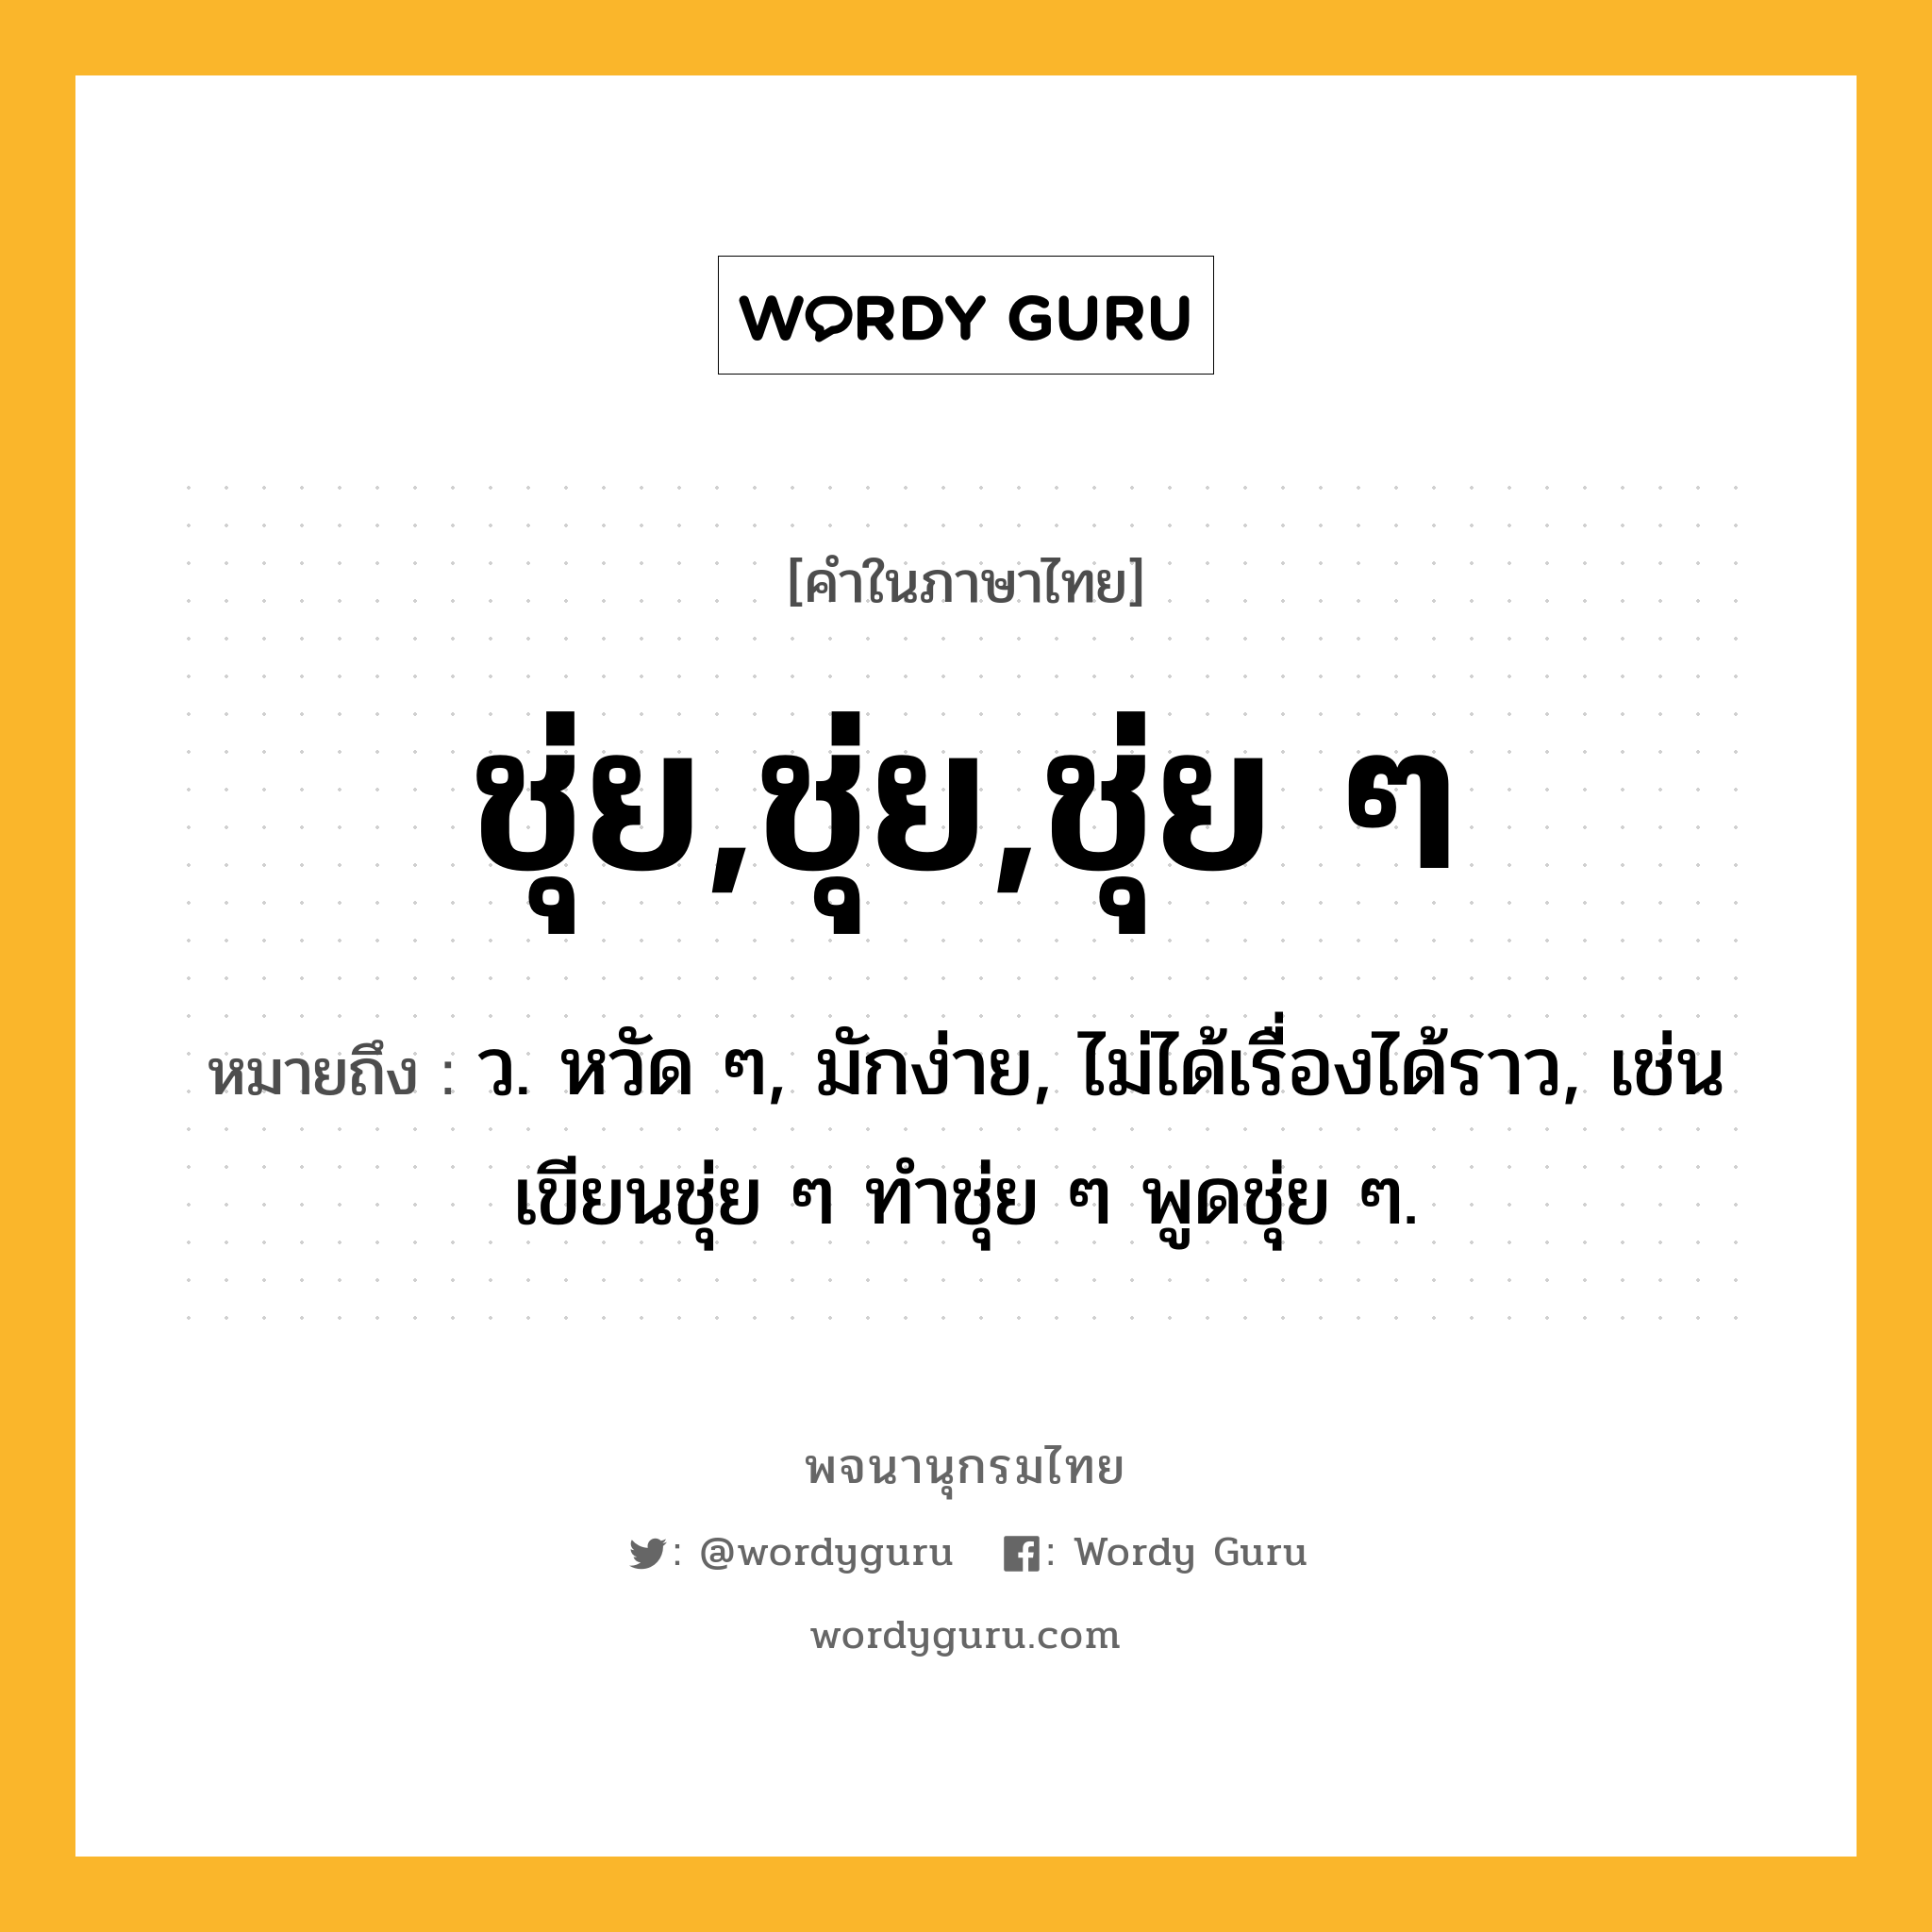 ชุ่ย,ชุ่ย,ชุ่ย ๆ หมายถึงอะไร?, คำในภาษาไทย ชุ่ย,ชุ่ย,ชุ่ย ๆ หมายถึง ว. หวัด ๆ, มักง่าย, ไม่ได้เรื่องได้ราว, เช่น เขียนชุ่ย ๆ ทําชุ่ย ๆ พูดชุ่ย ๆ.